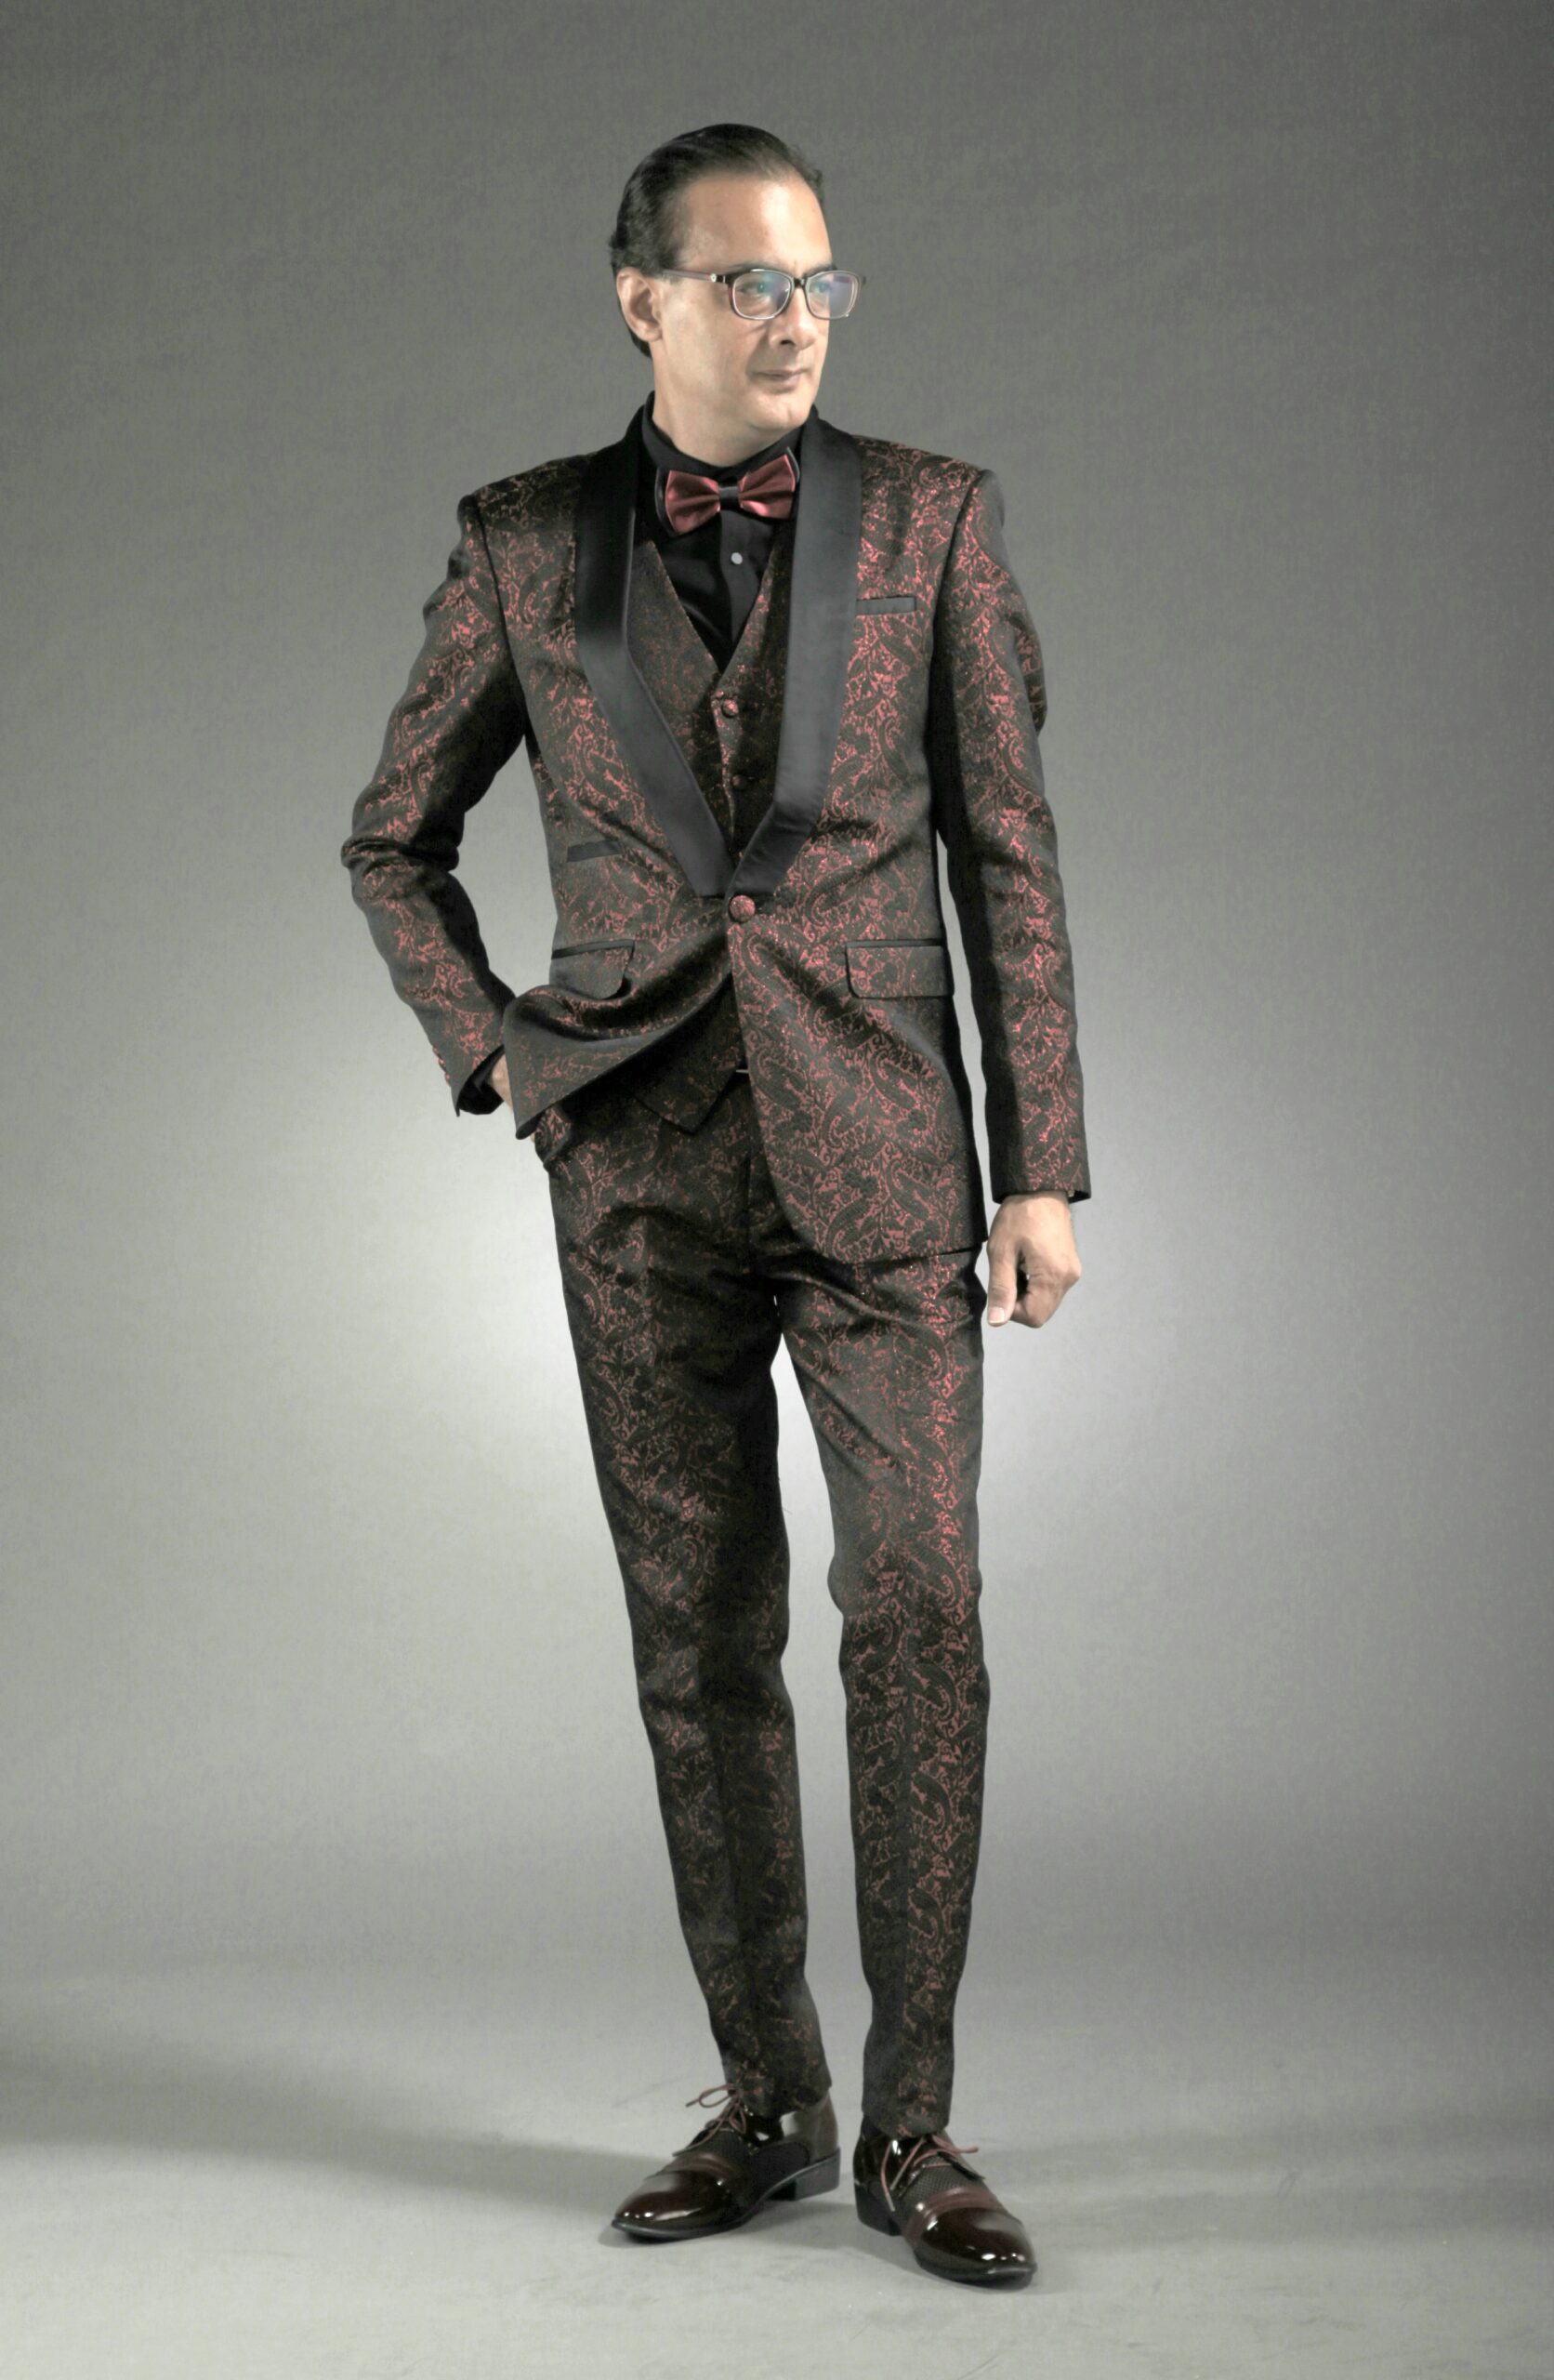 MST-5069-01-rent_rental_hire_tuxedo_suit_black_tie_suit_designer_suits_shop_tailor_tailors_singapore_wedding